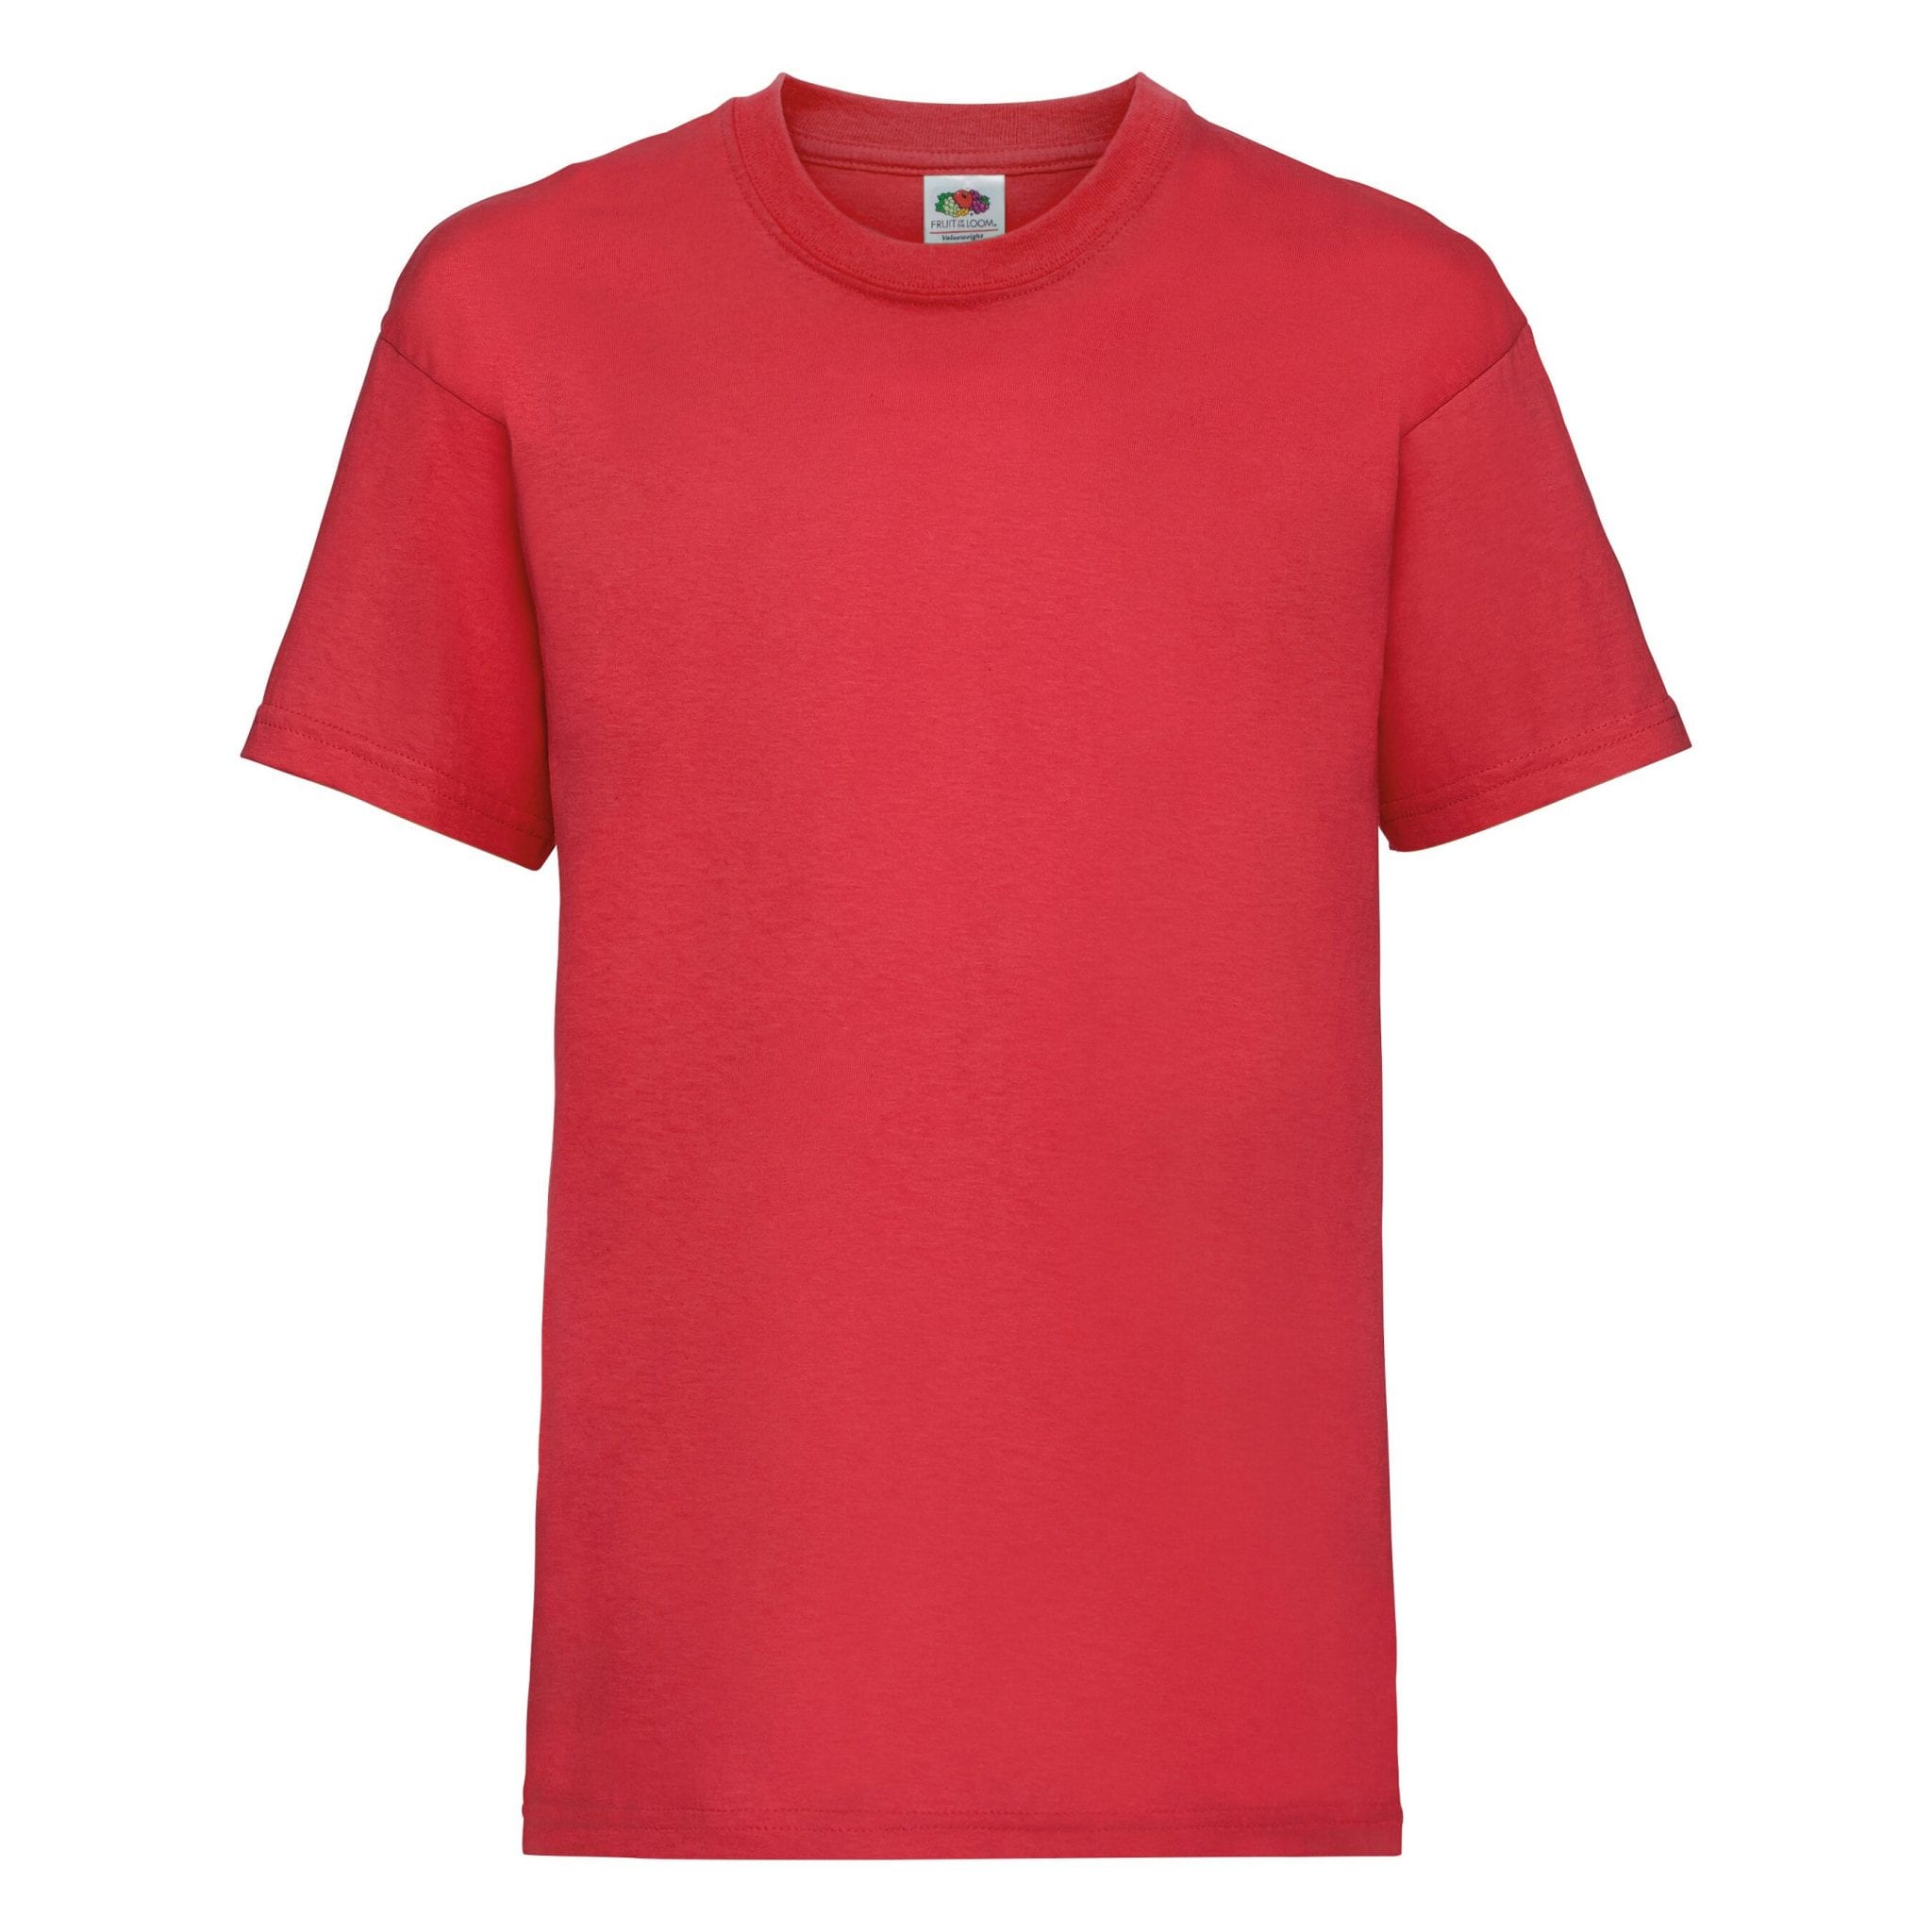 red cotton tshirt